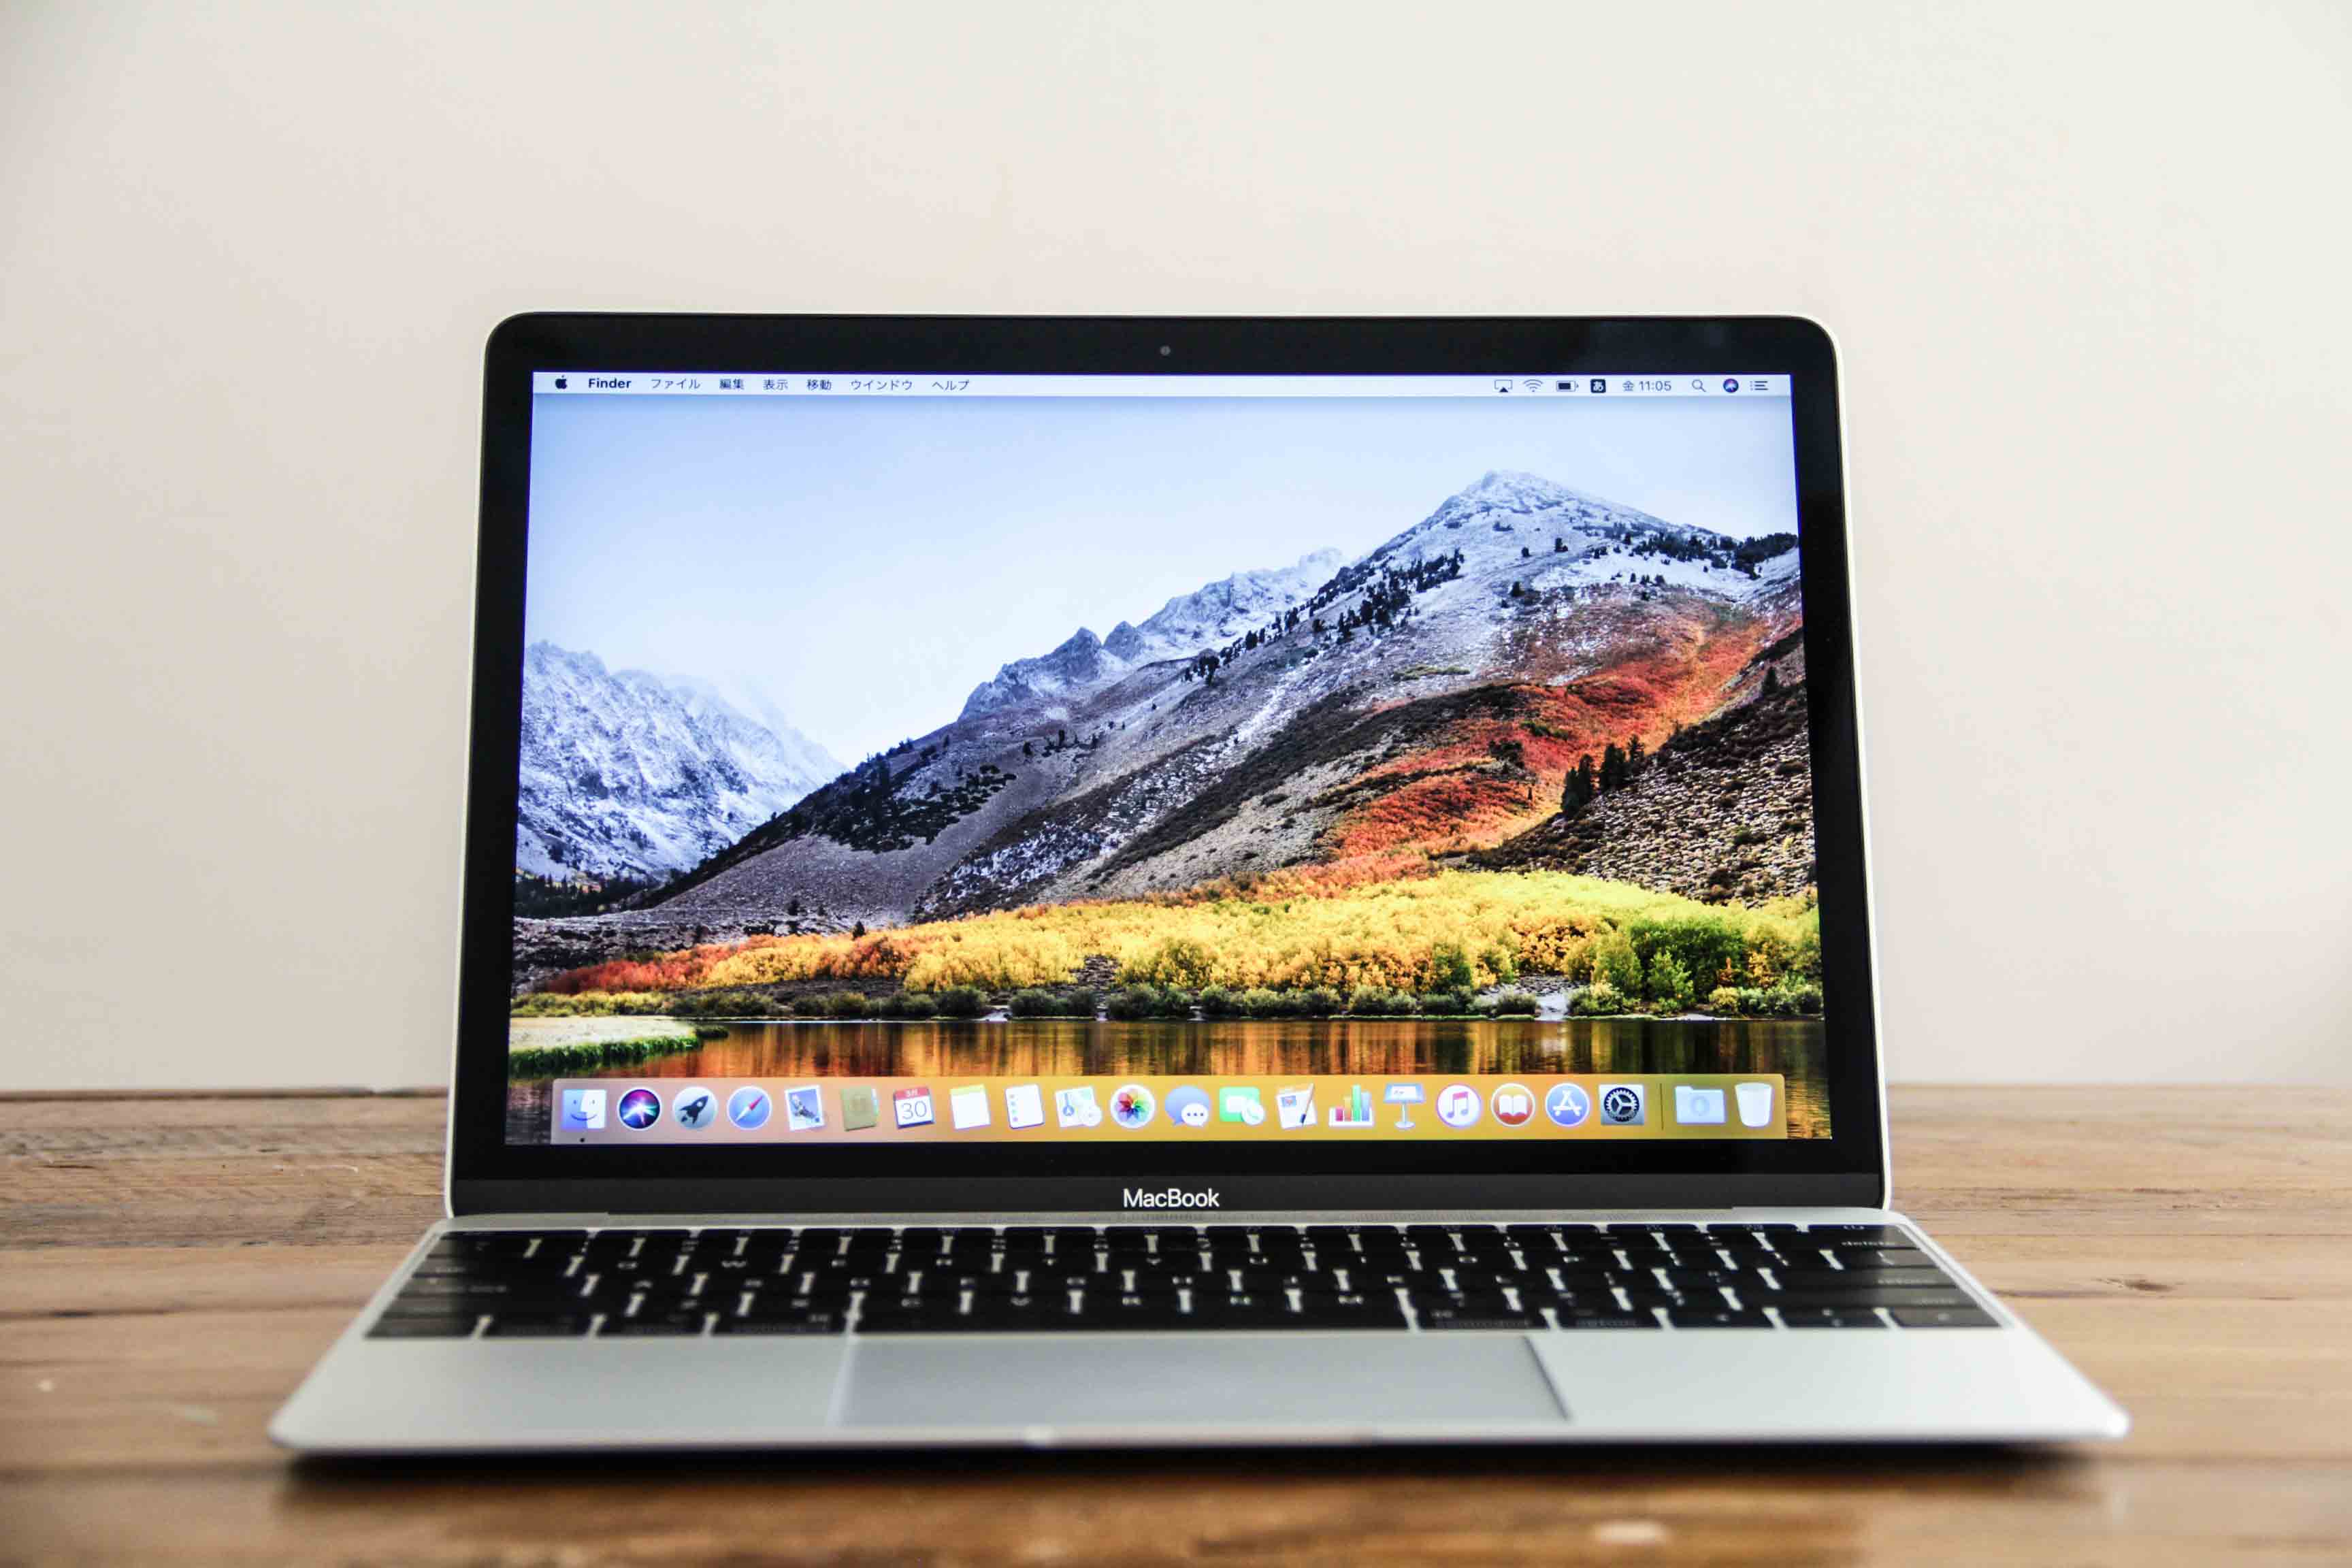 MacBook 12インチ 16GBモデル レビュー! 購入(価格) と使用感は?